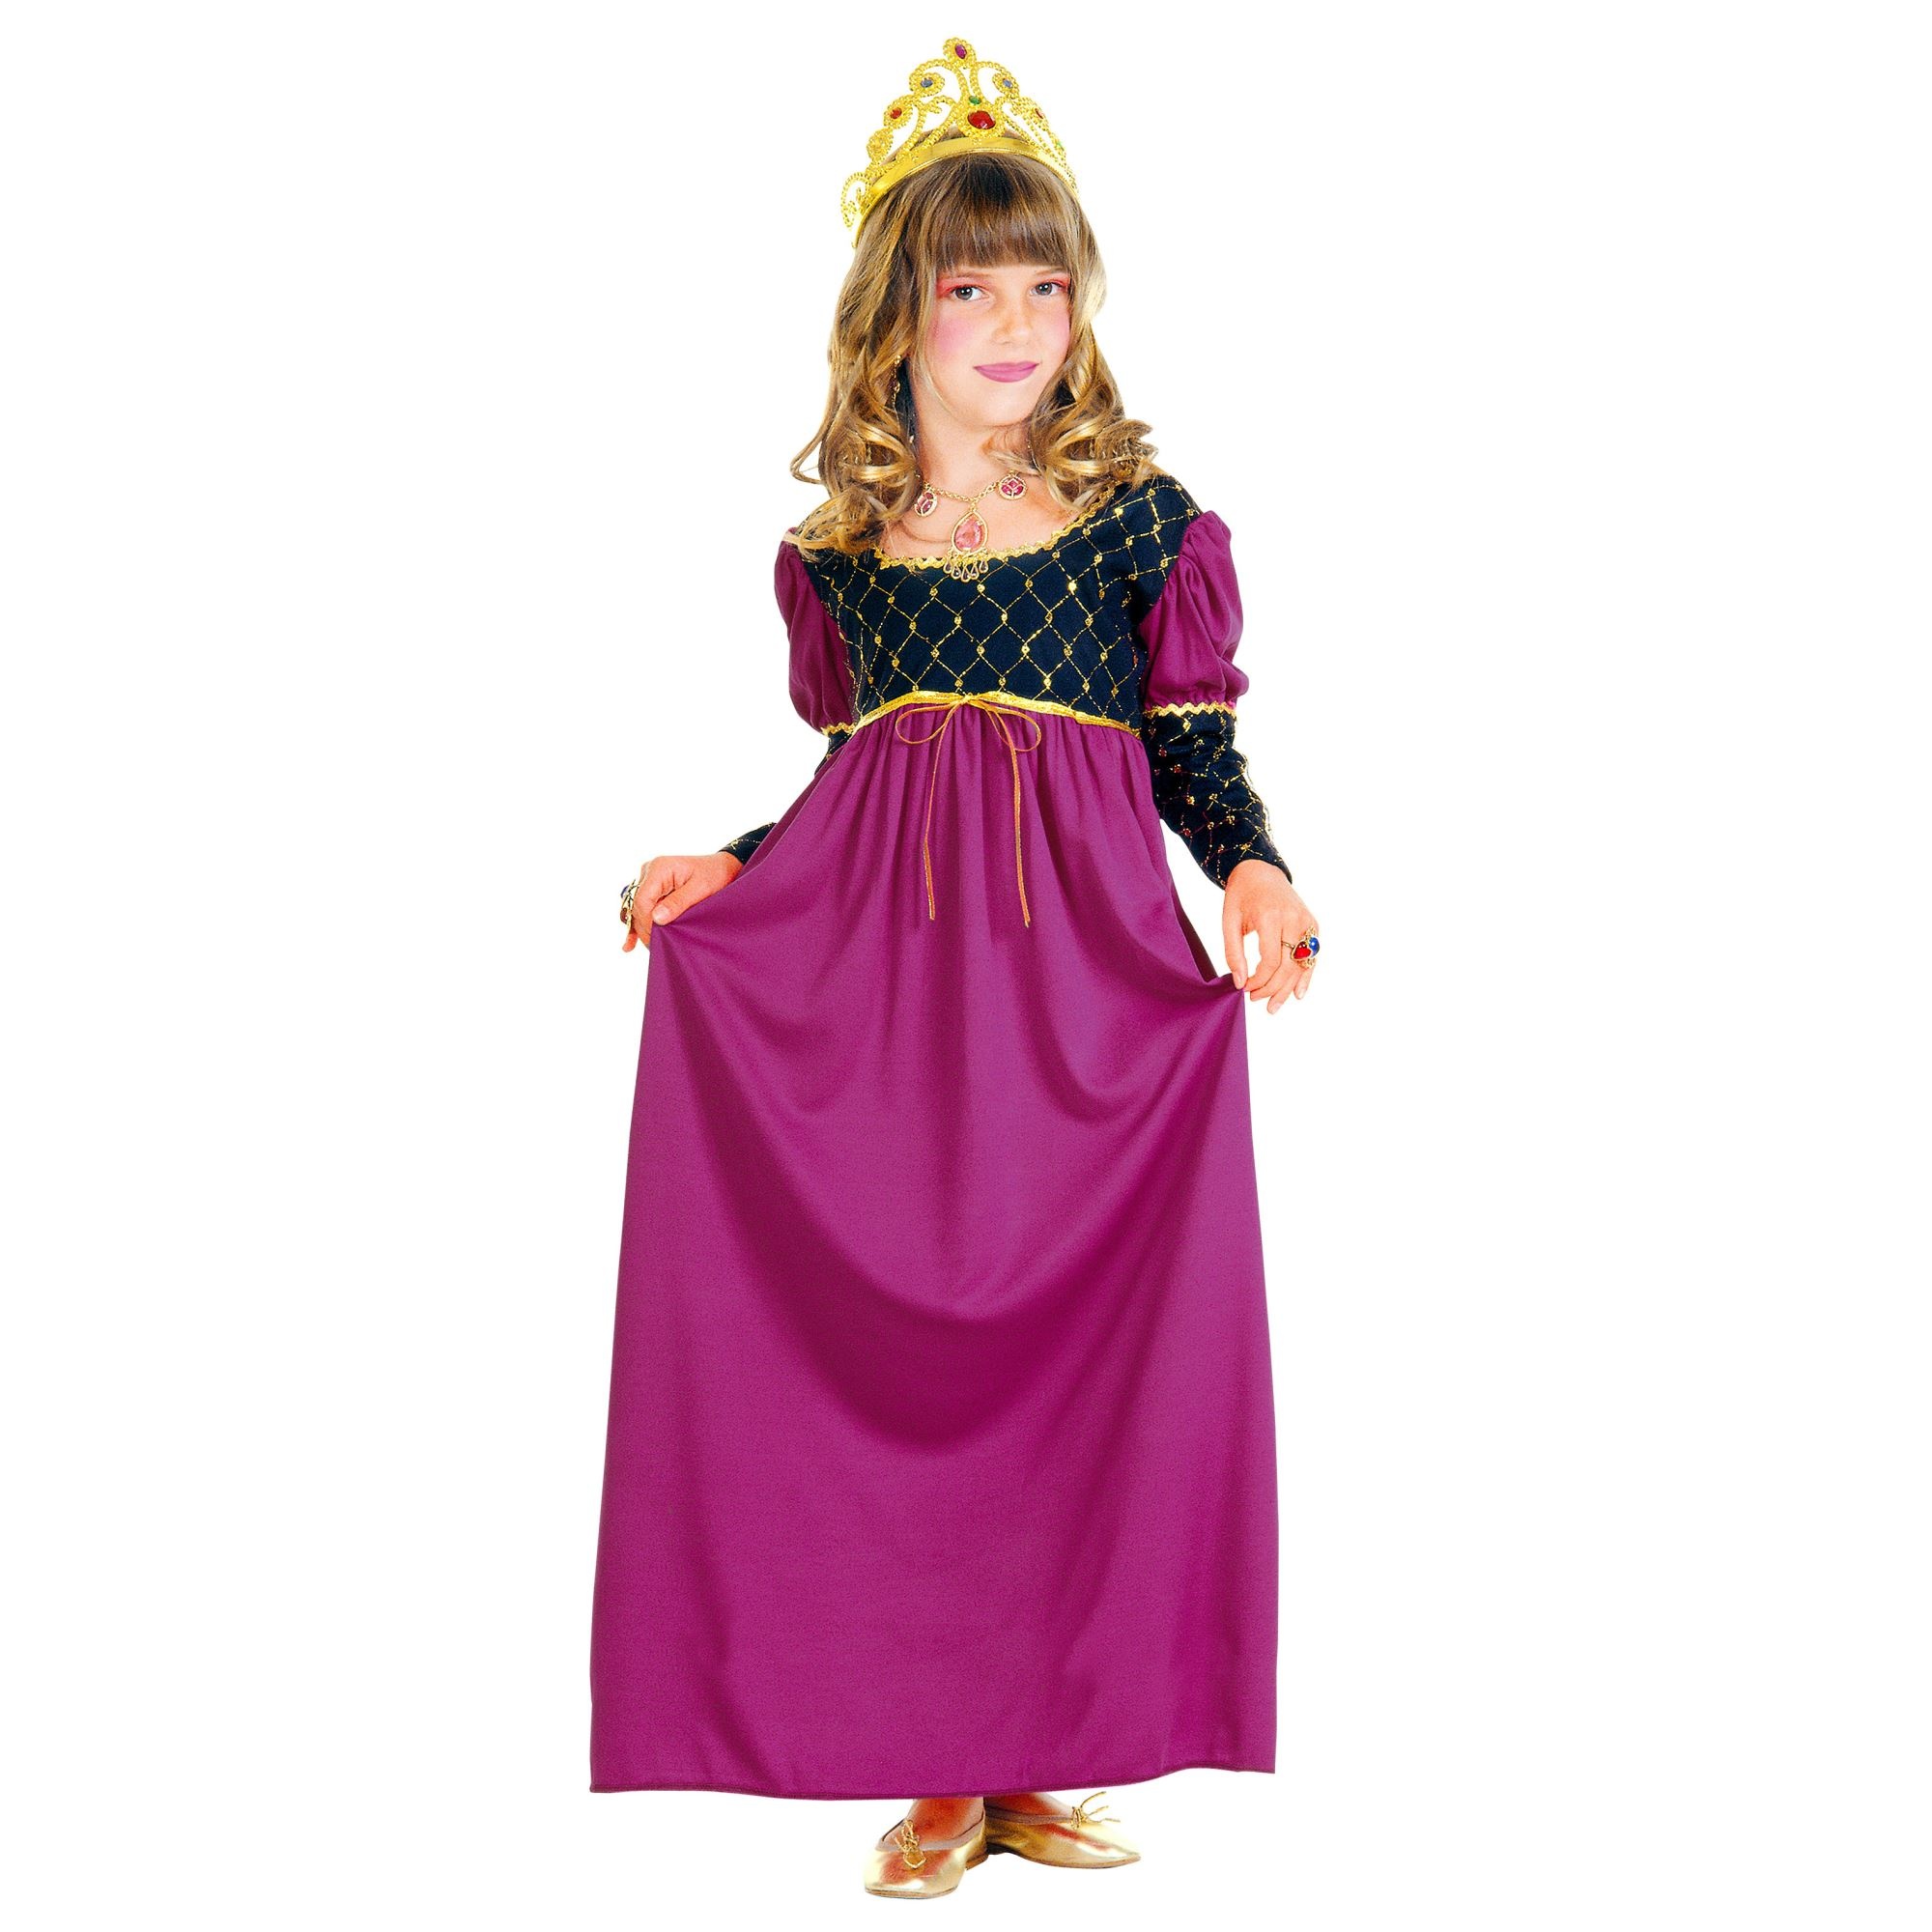 Roze middeleeuwse prinses kostuum voor meisjes - Verkleedkleding